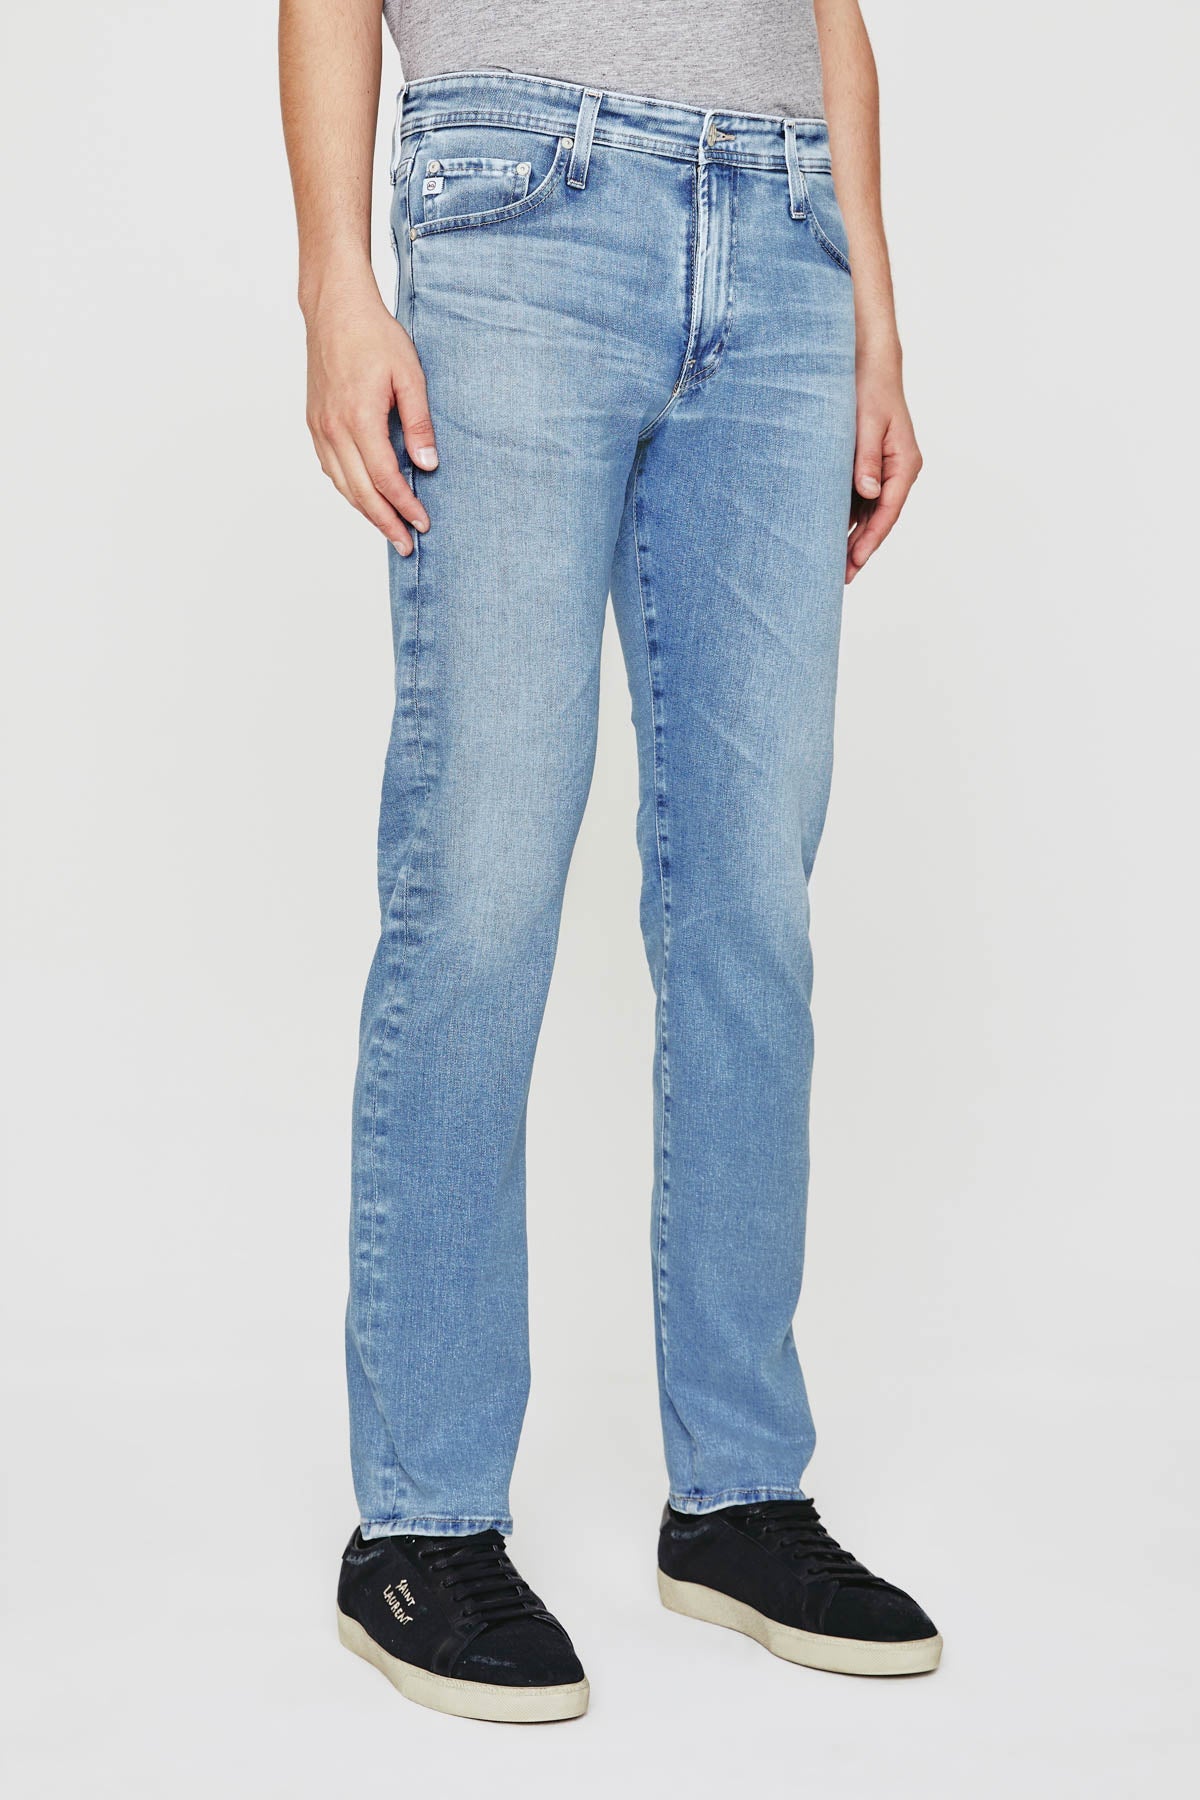 Tellis Modern Slim Jean - AG Jeans - Danali - 1783HYI-16YCOV-30